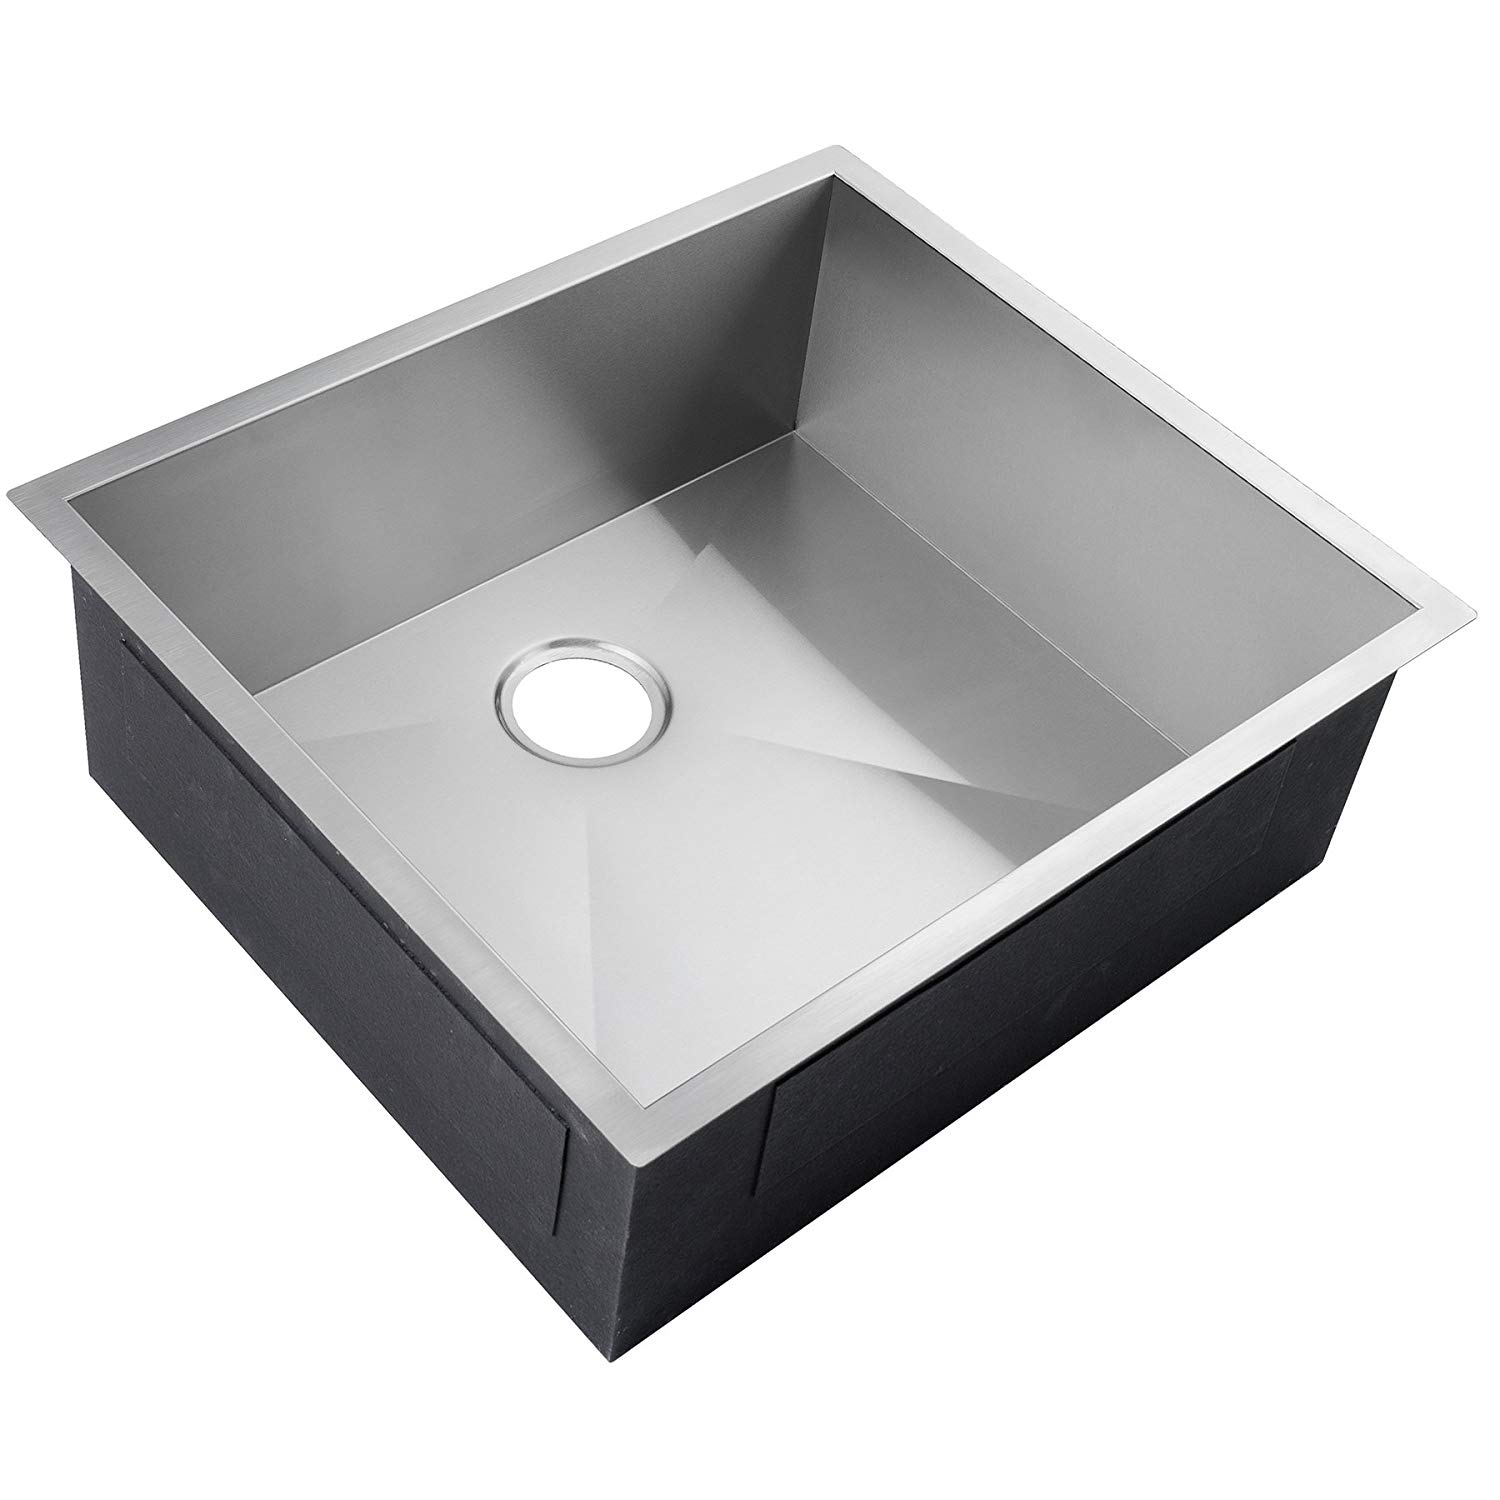 25 Inch Stainless Steel Handmade Undermount Kitchen Sink